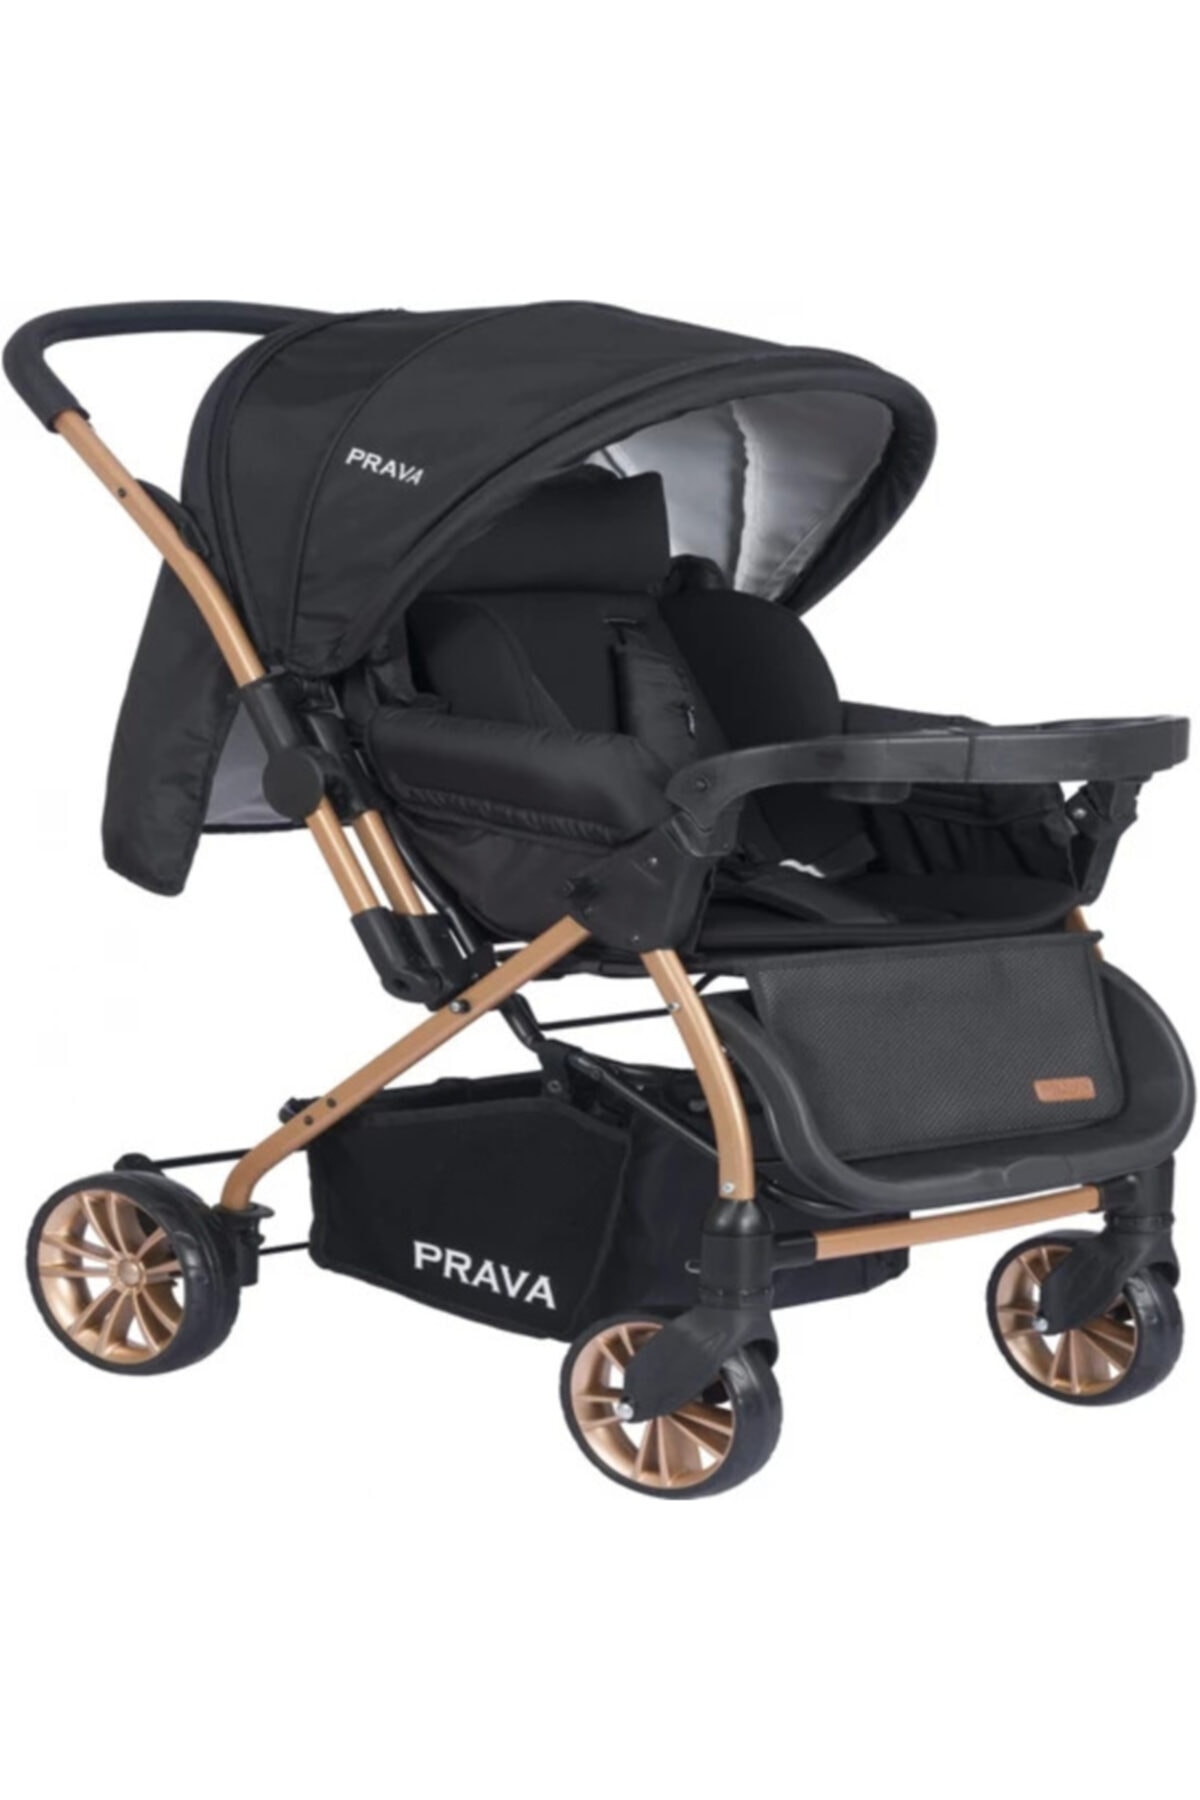 Prava P11 Dream Plus Bebek Arabası Gold Siyah